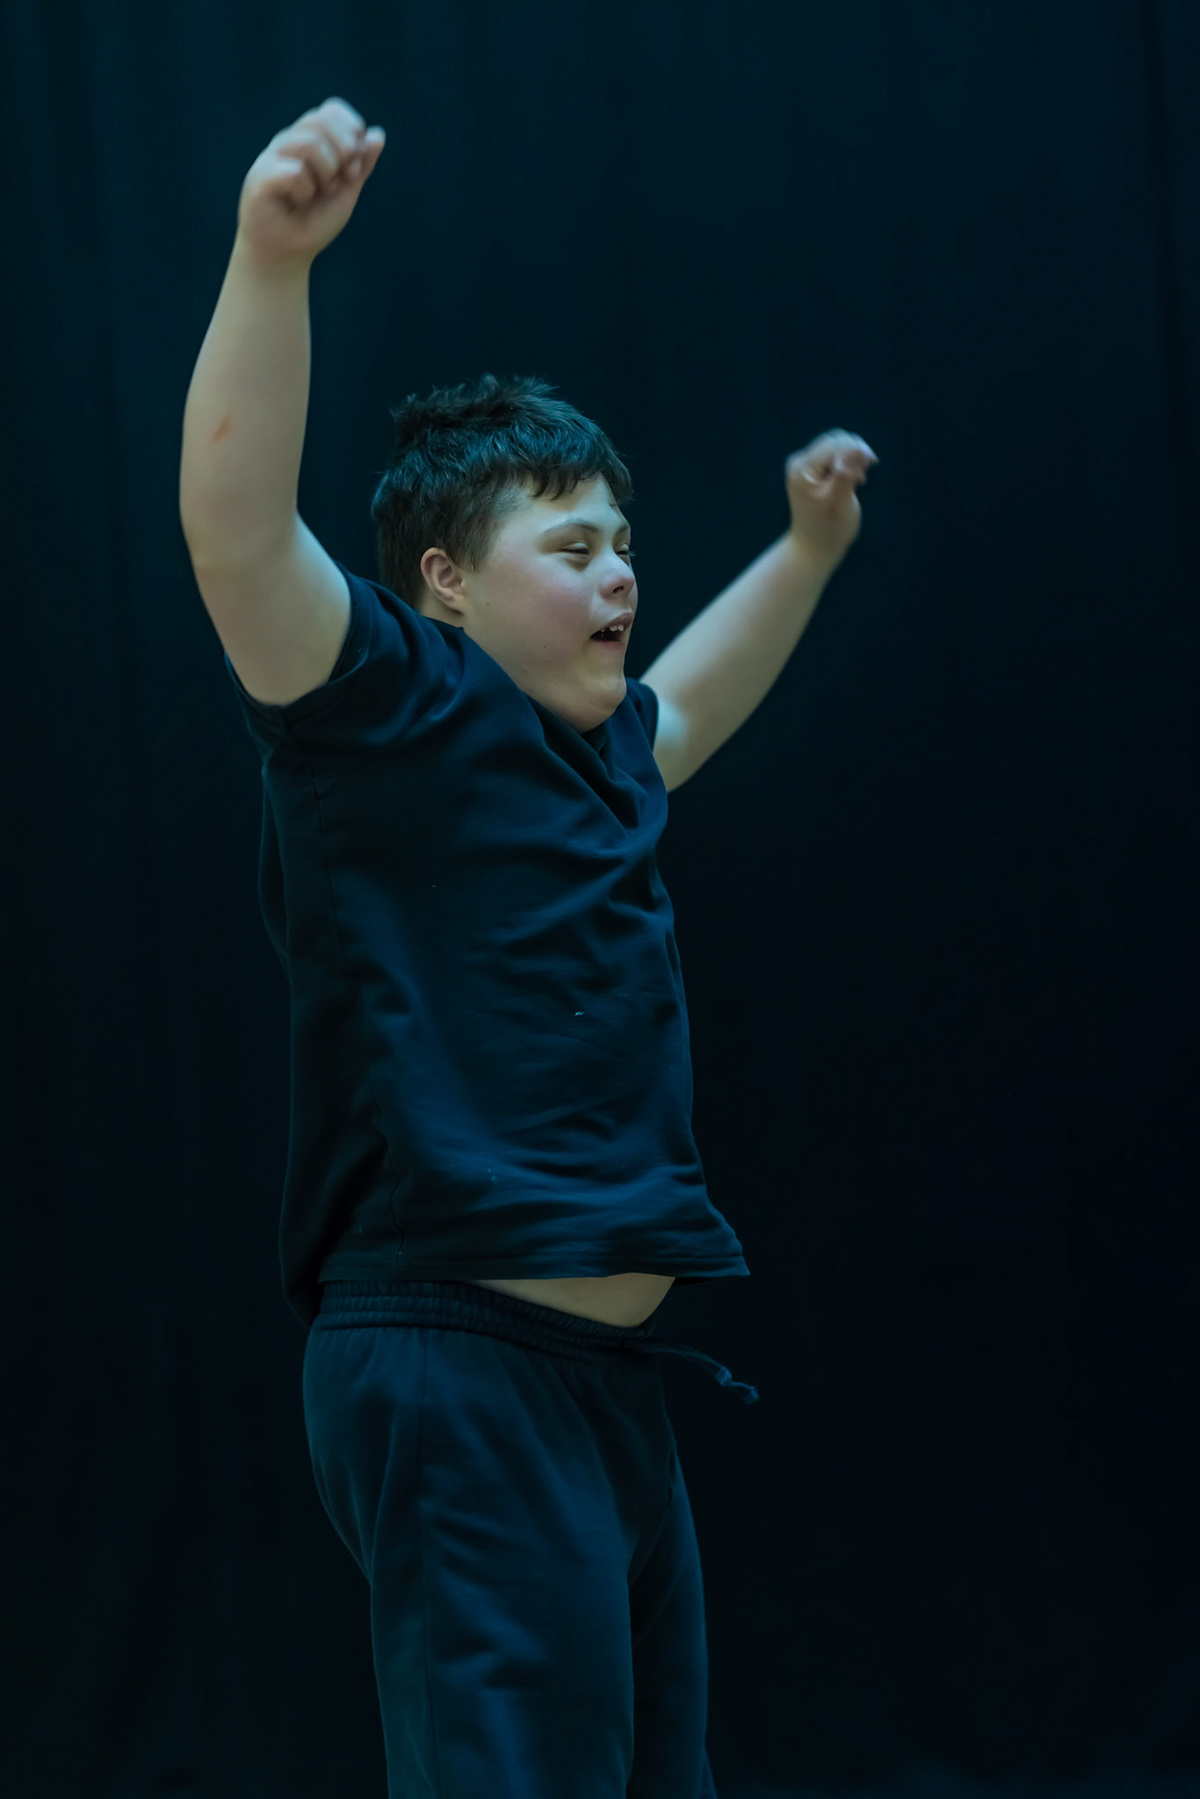 AMICI Dance Theatre Shane Aurousseau portrait autism cerebral palsy down syndrome blindness Deafness Motor Neuron Disease